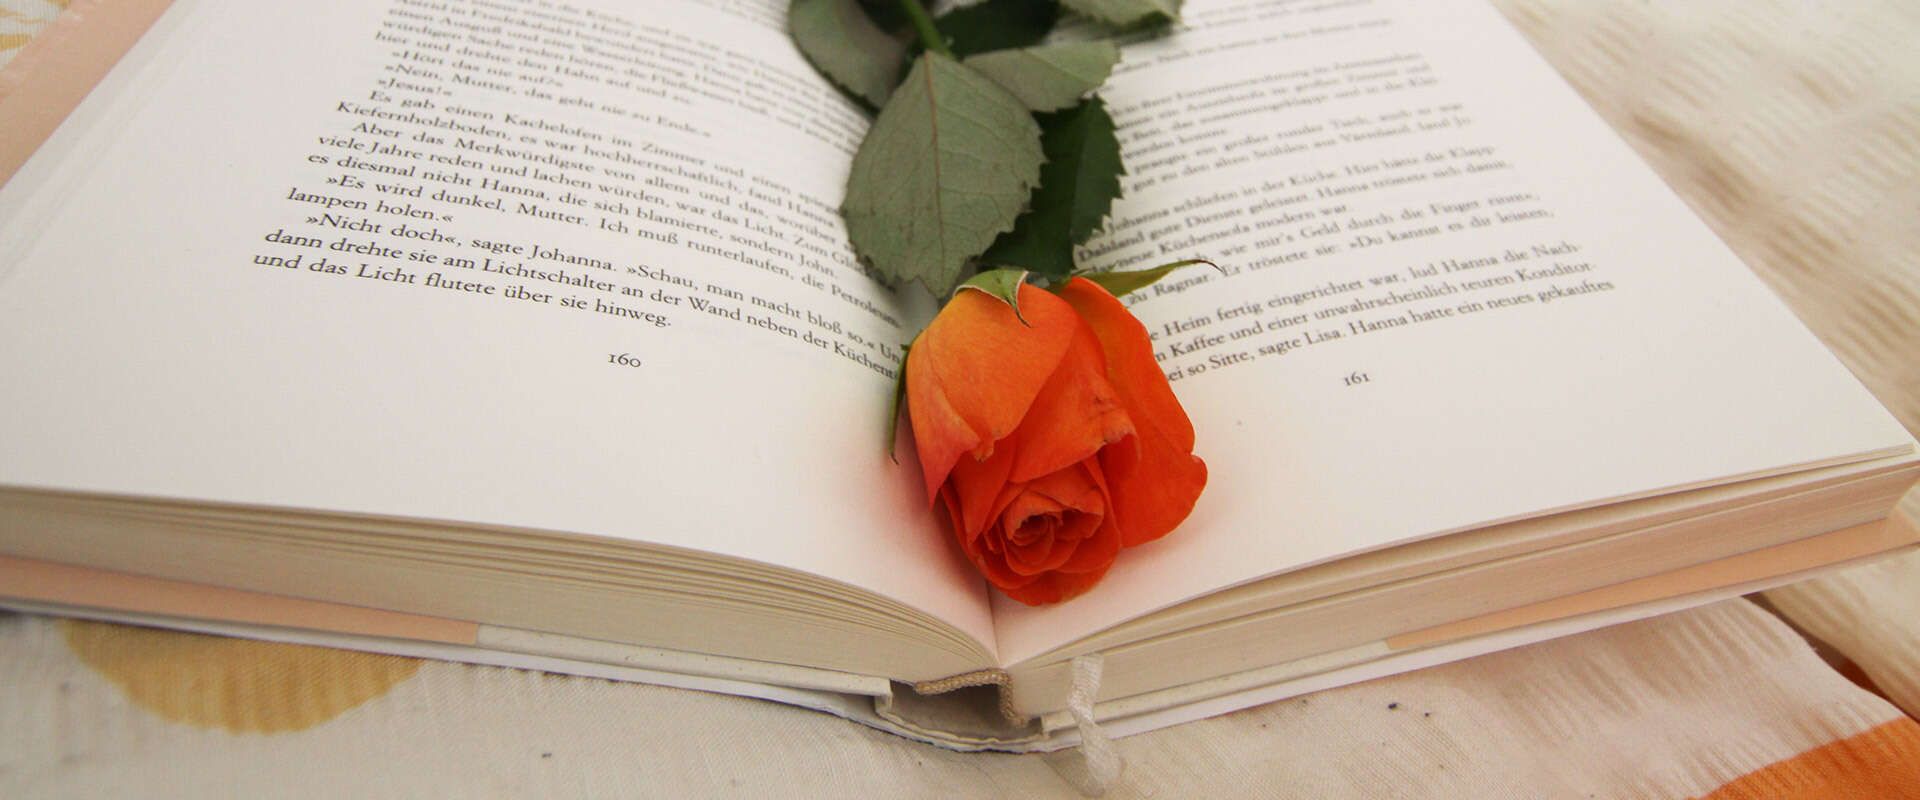 Buch mit einer Rose